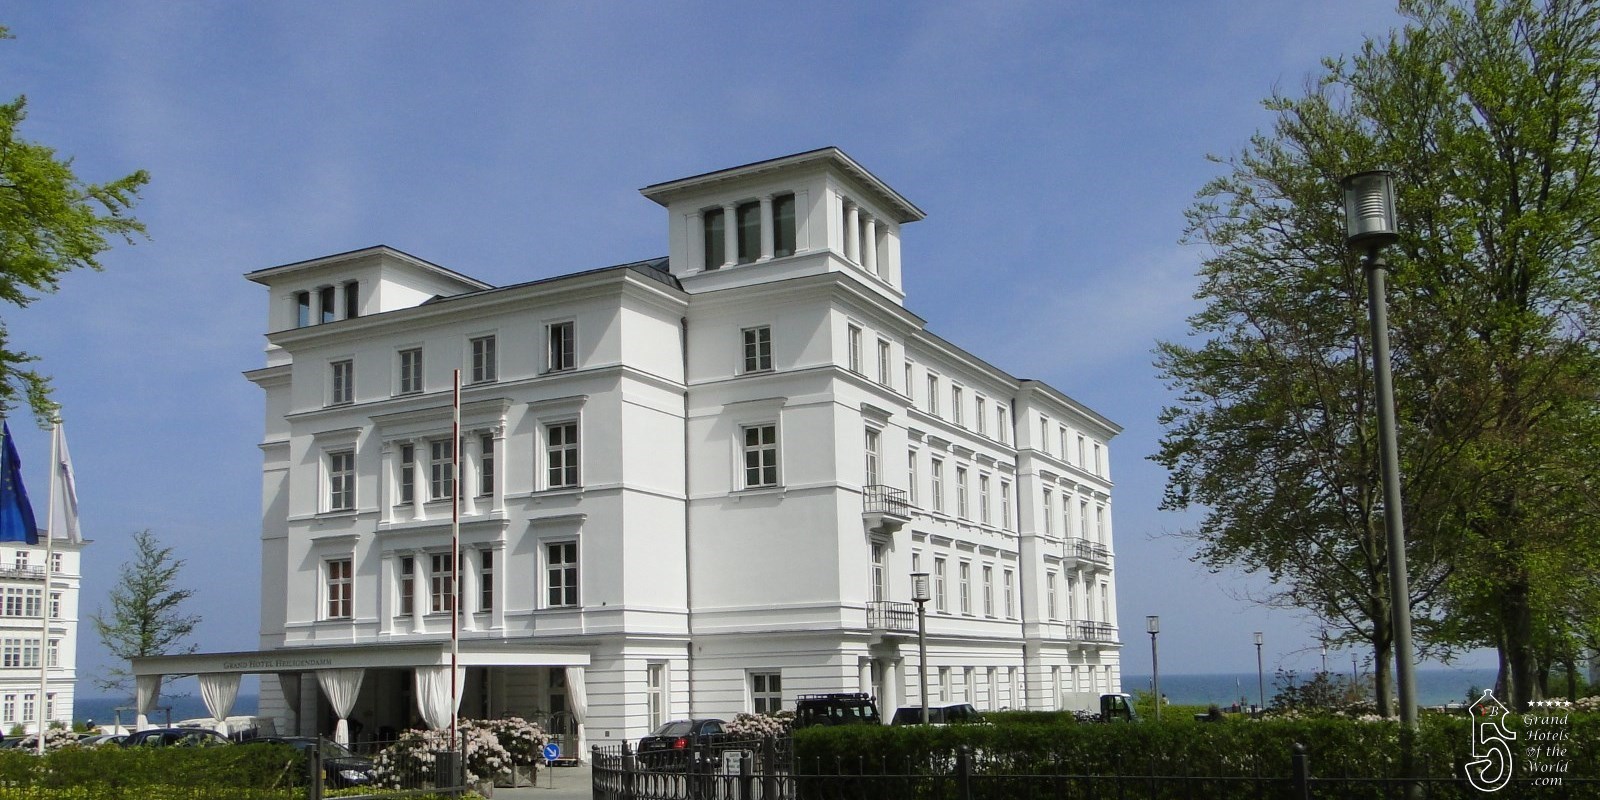 Grand Hotel Heiligendamm in Heiligendamm